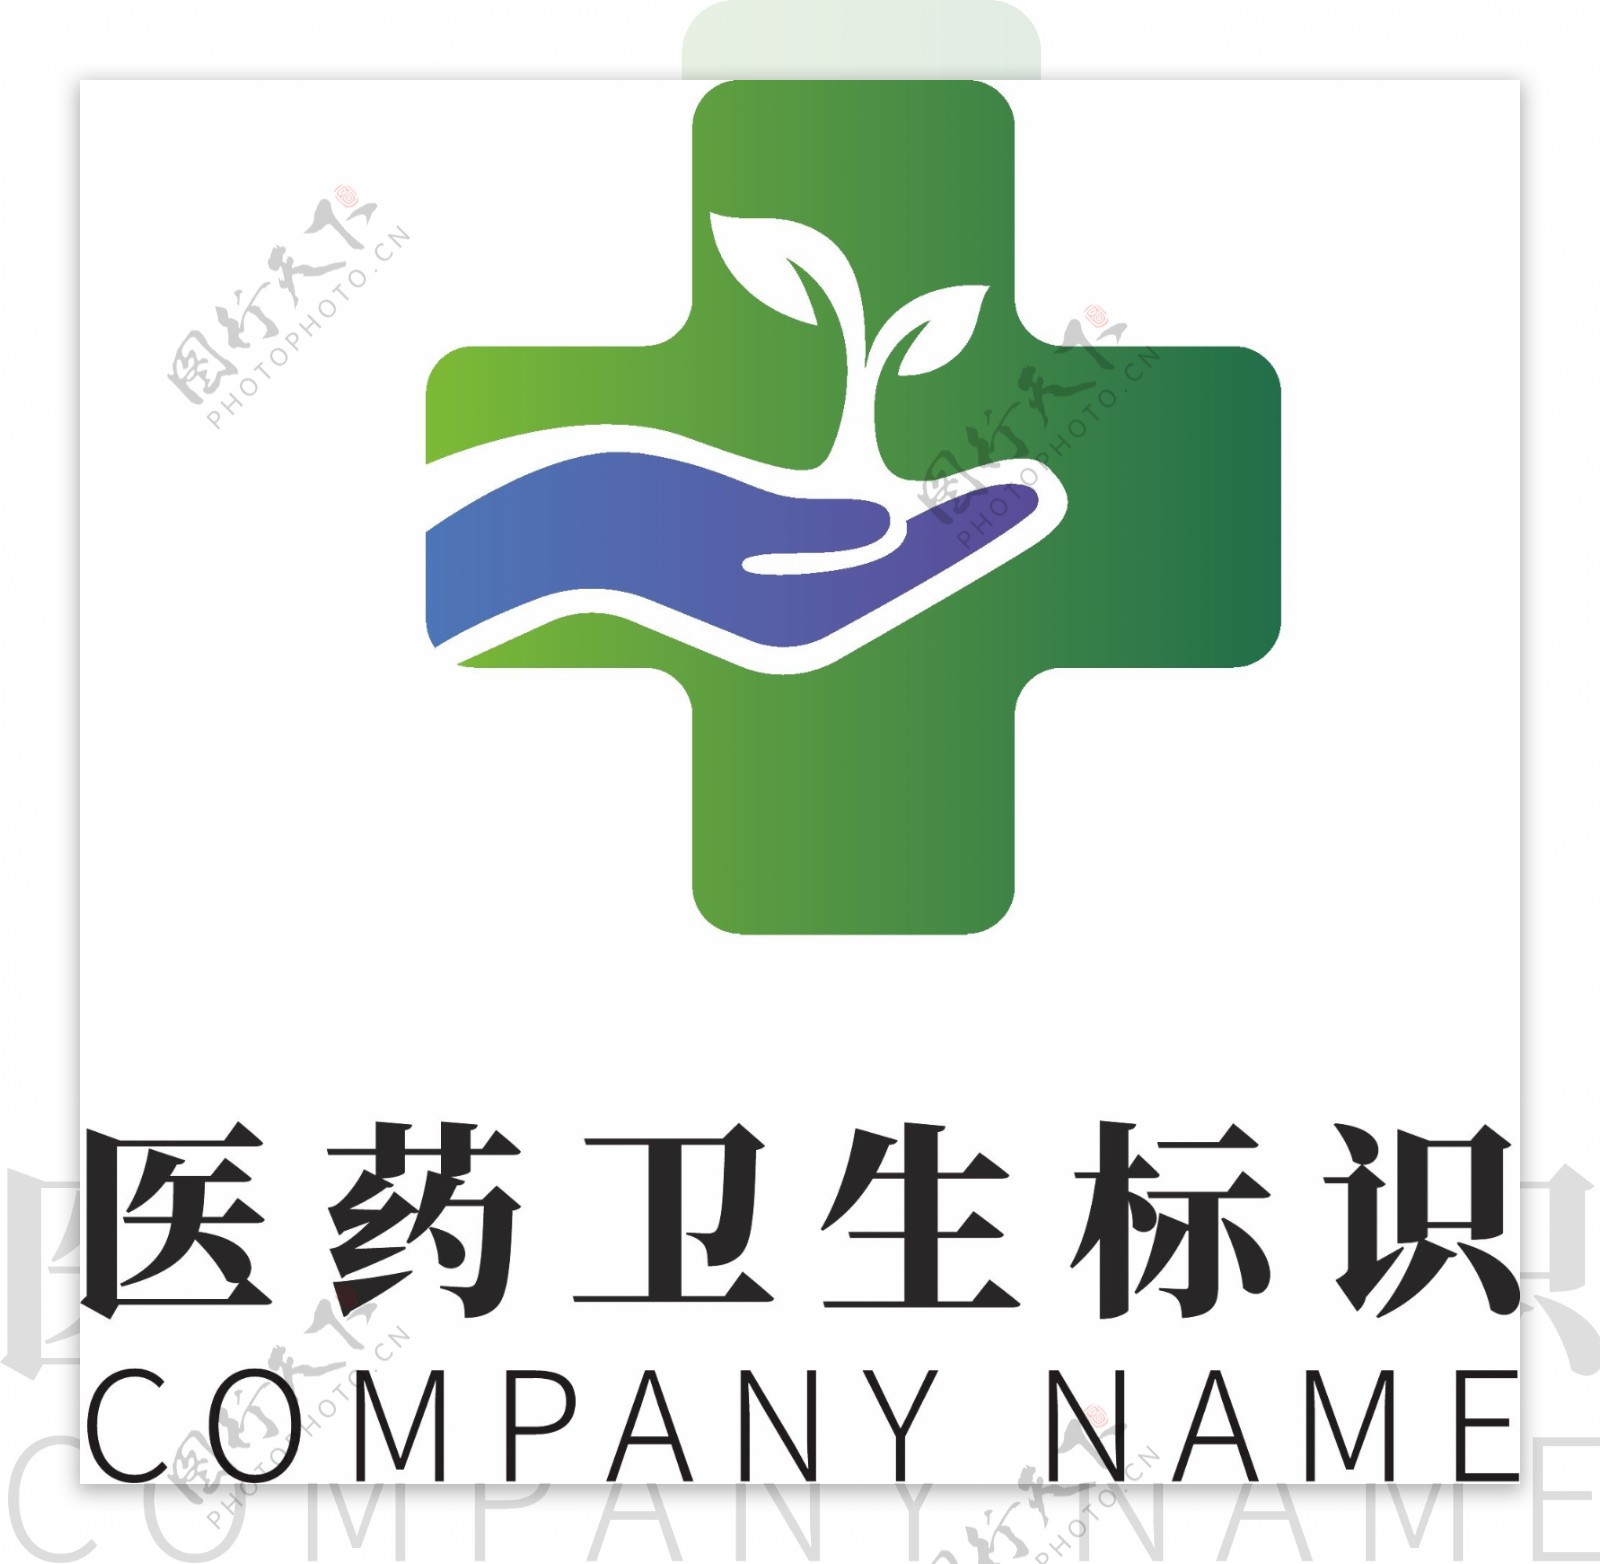 蓝色科技医药卫生环保企业logo标识模板